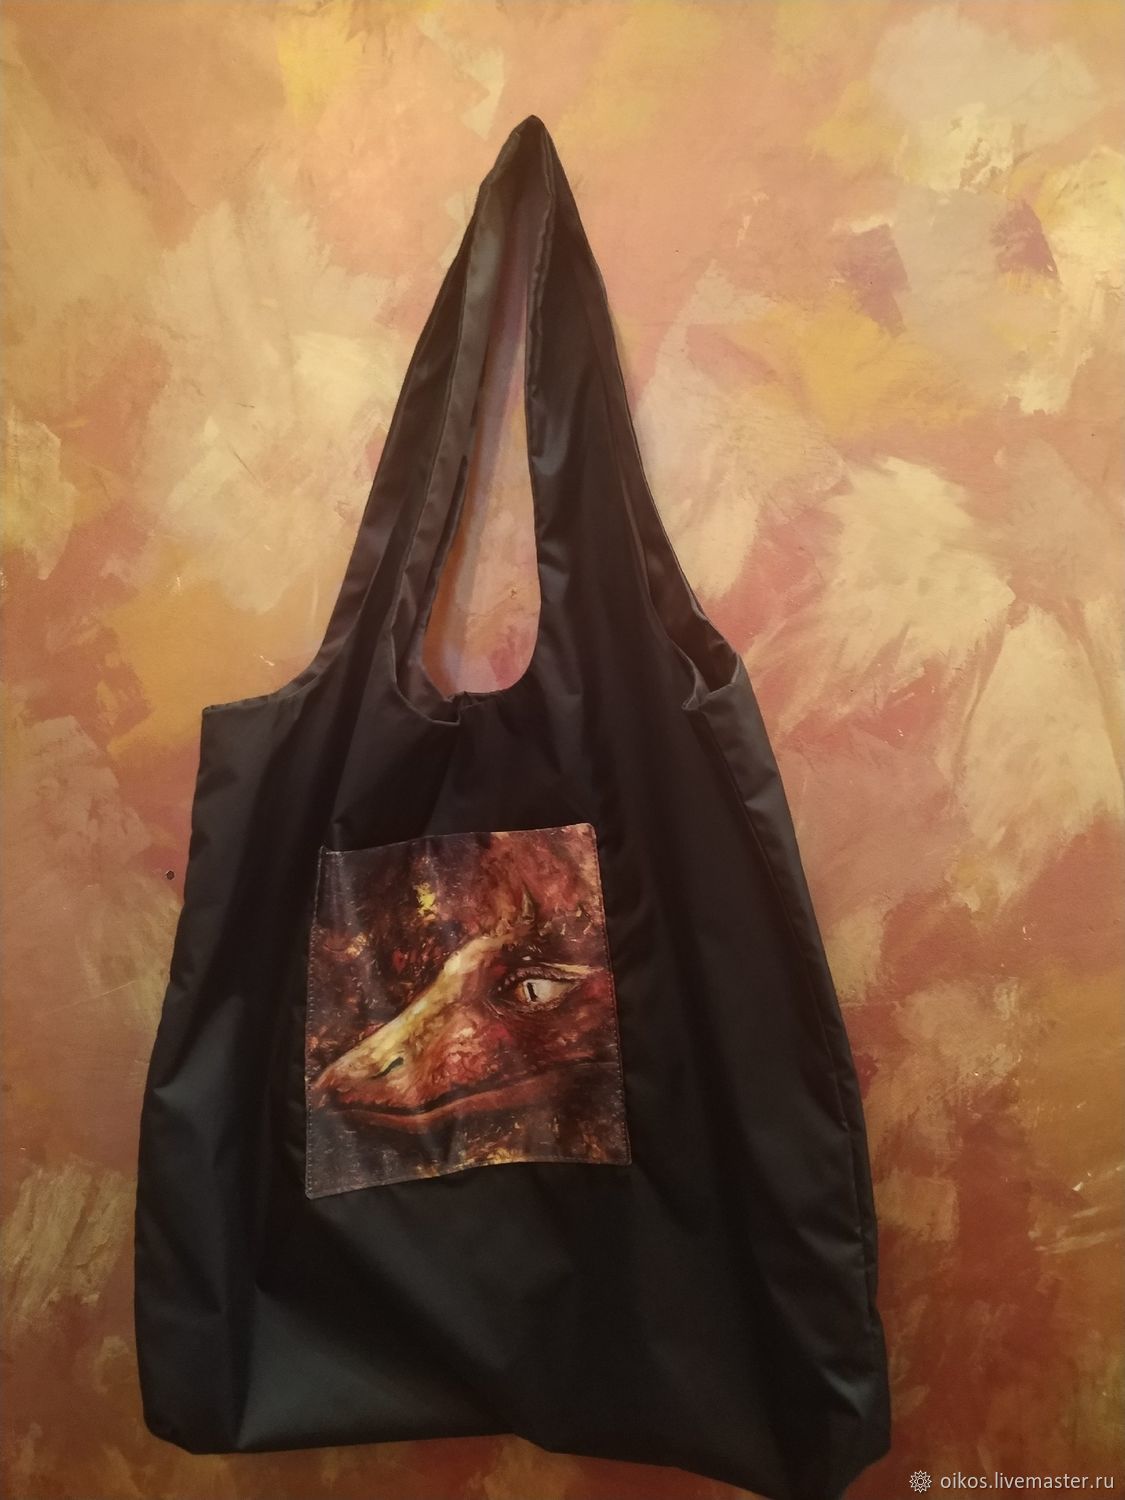 Шоппер сумка с рисунком черная